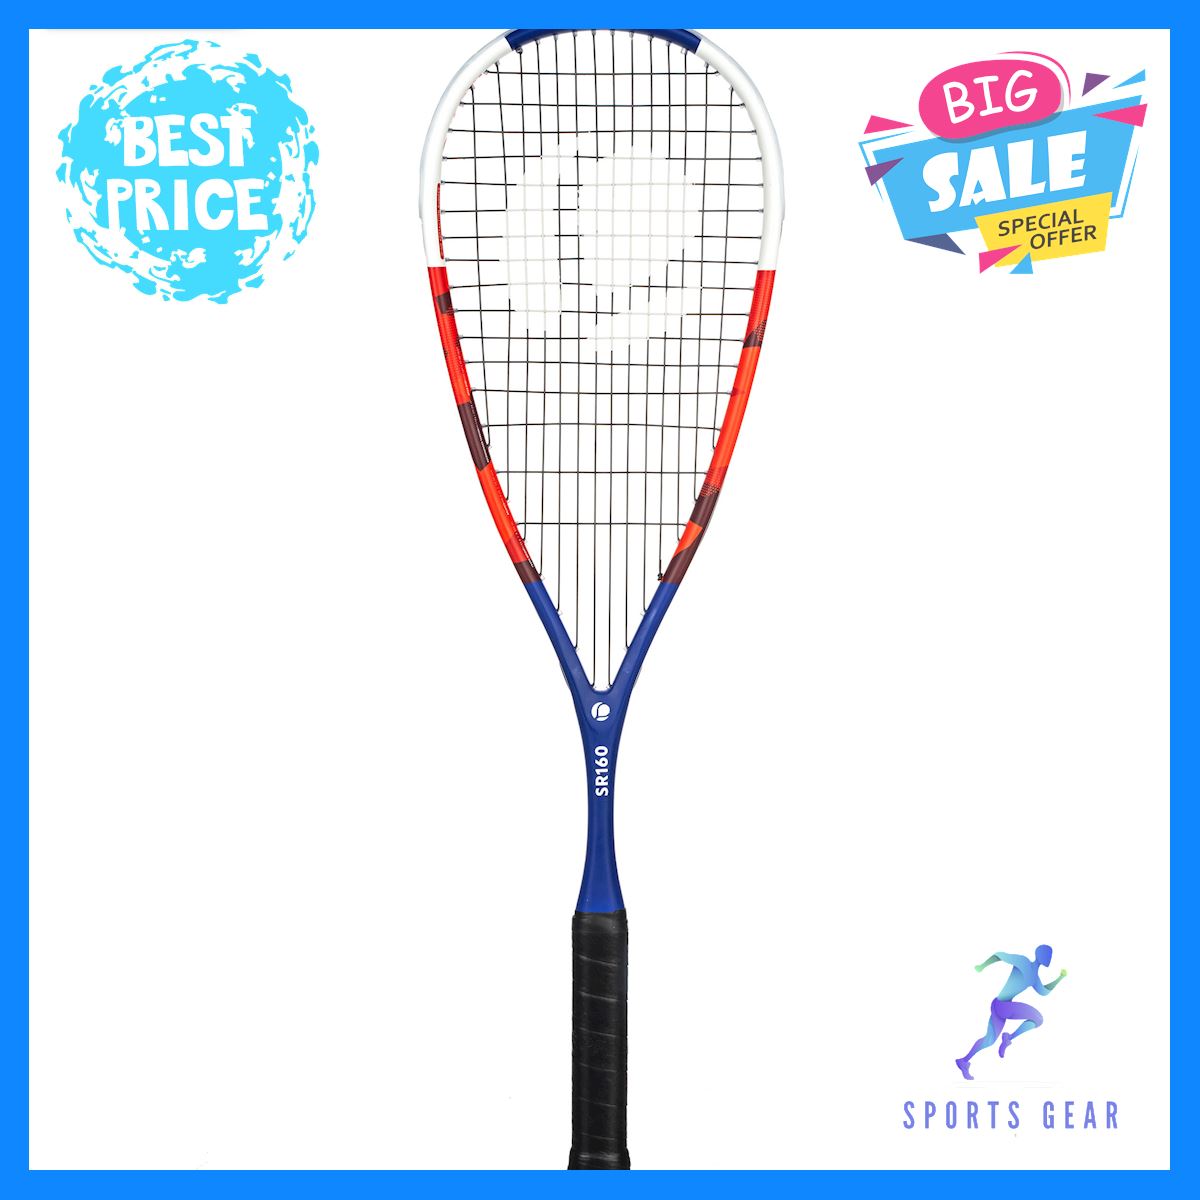 แร็คเกตสควอช Squash Racket รุ่น SR 160 2019 อุปกรณ์สคอช Squash สคอช ไม้สคอช ลูกสควอช